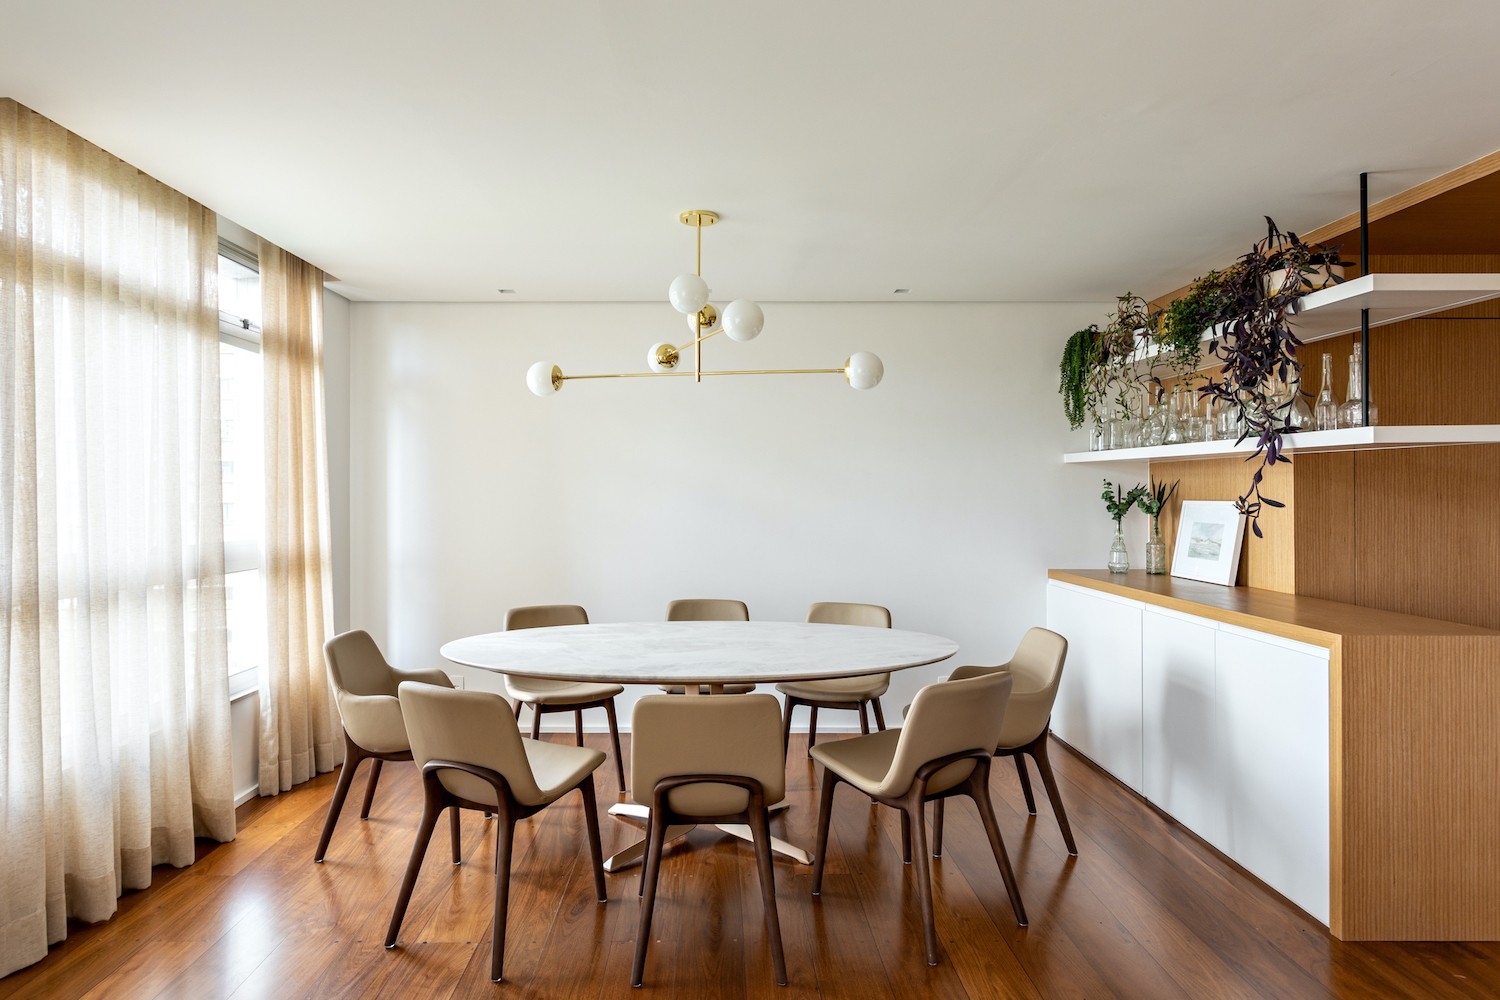 SALA DE JANTAR | A mesa de jantar com tampo de mármore é a Legg, por Jader Almeida, e as cadeiras, também assinadas pelo designer, são a Joy (Foto: Divulgação / Fran Parente)